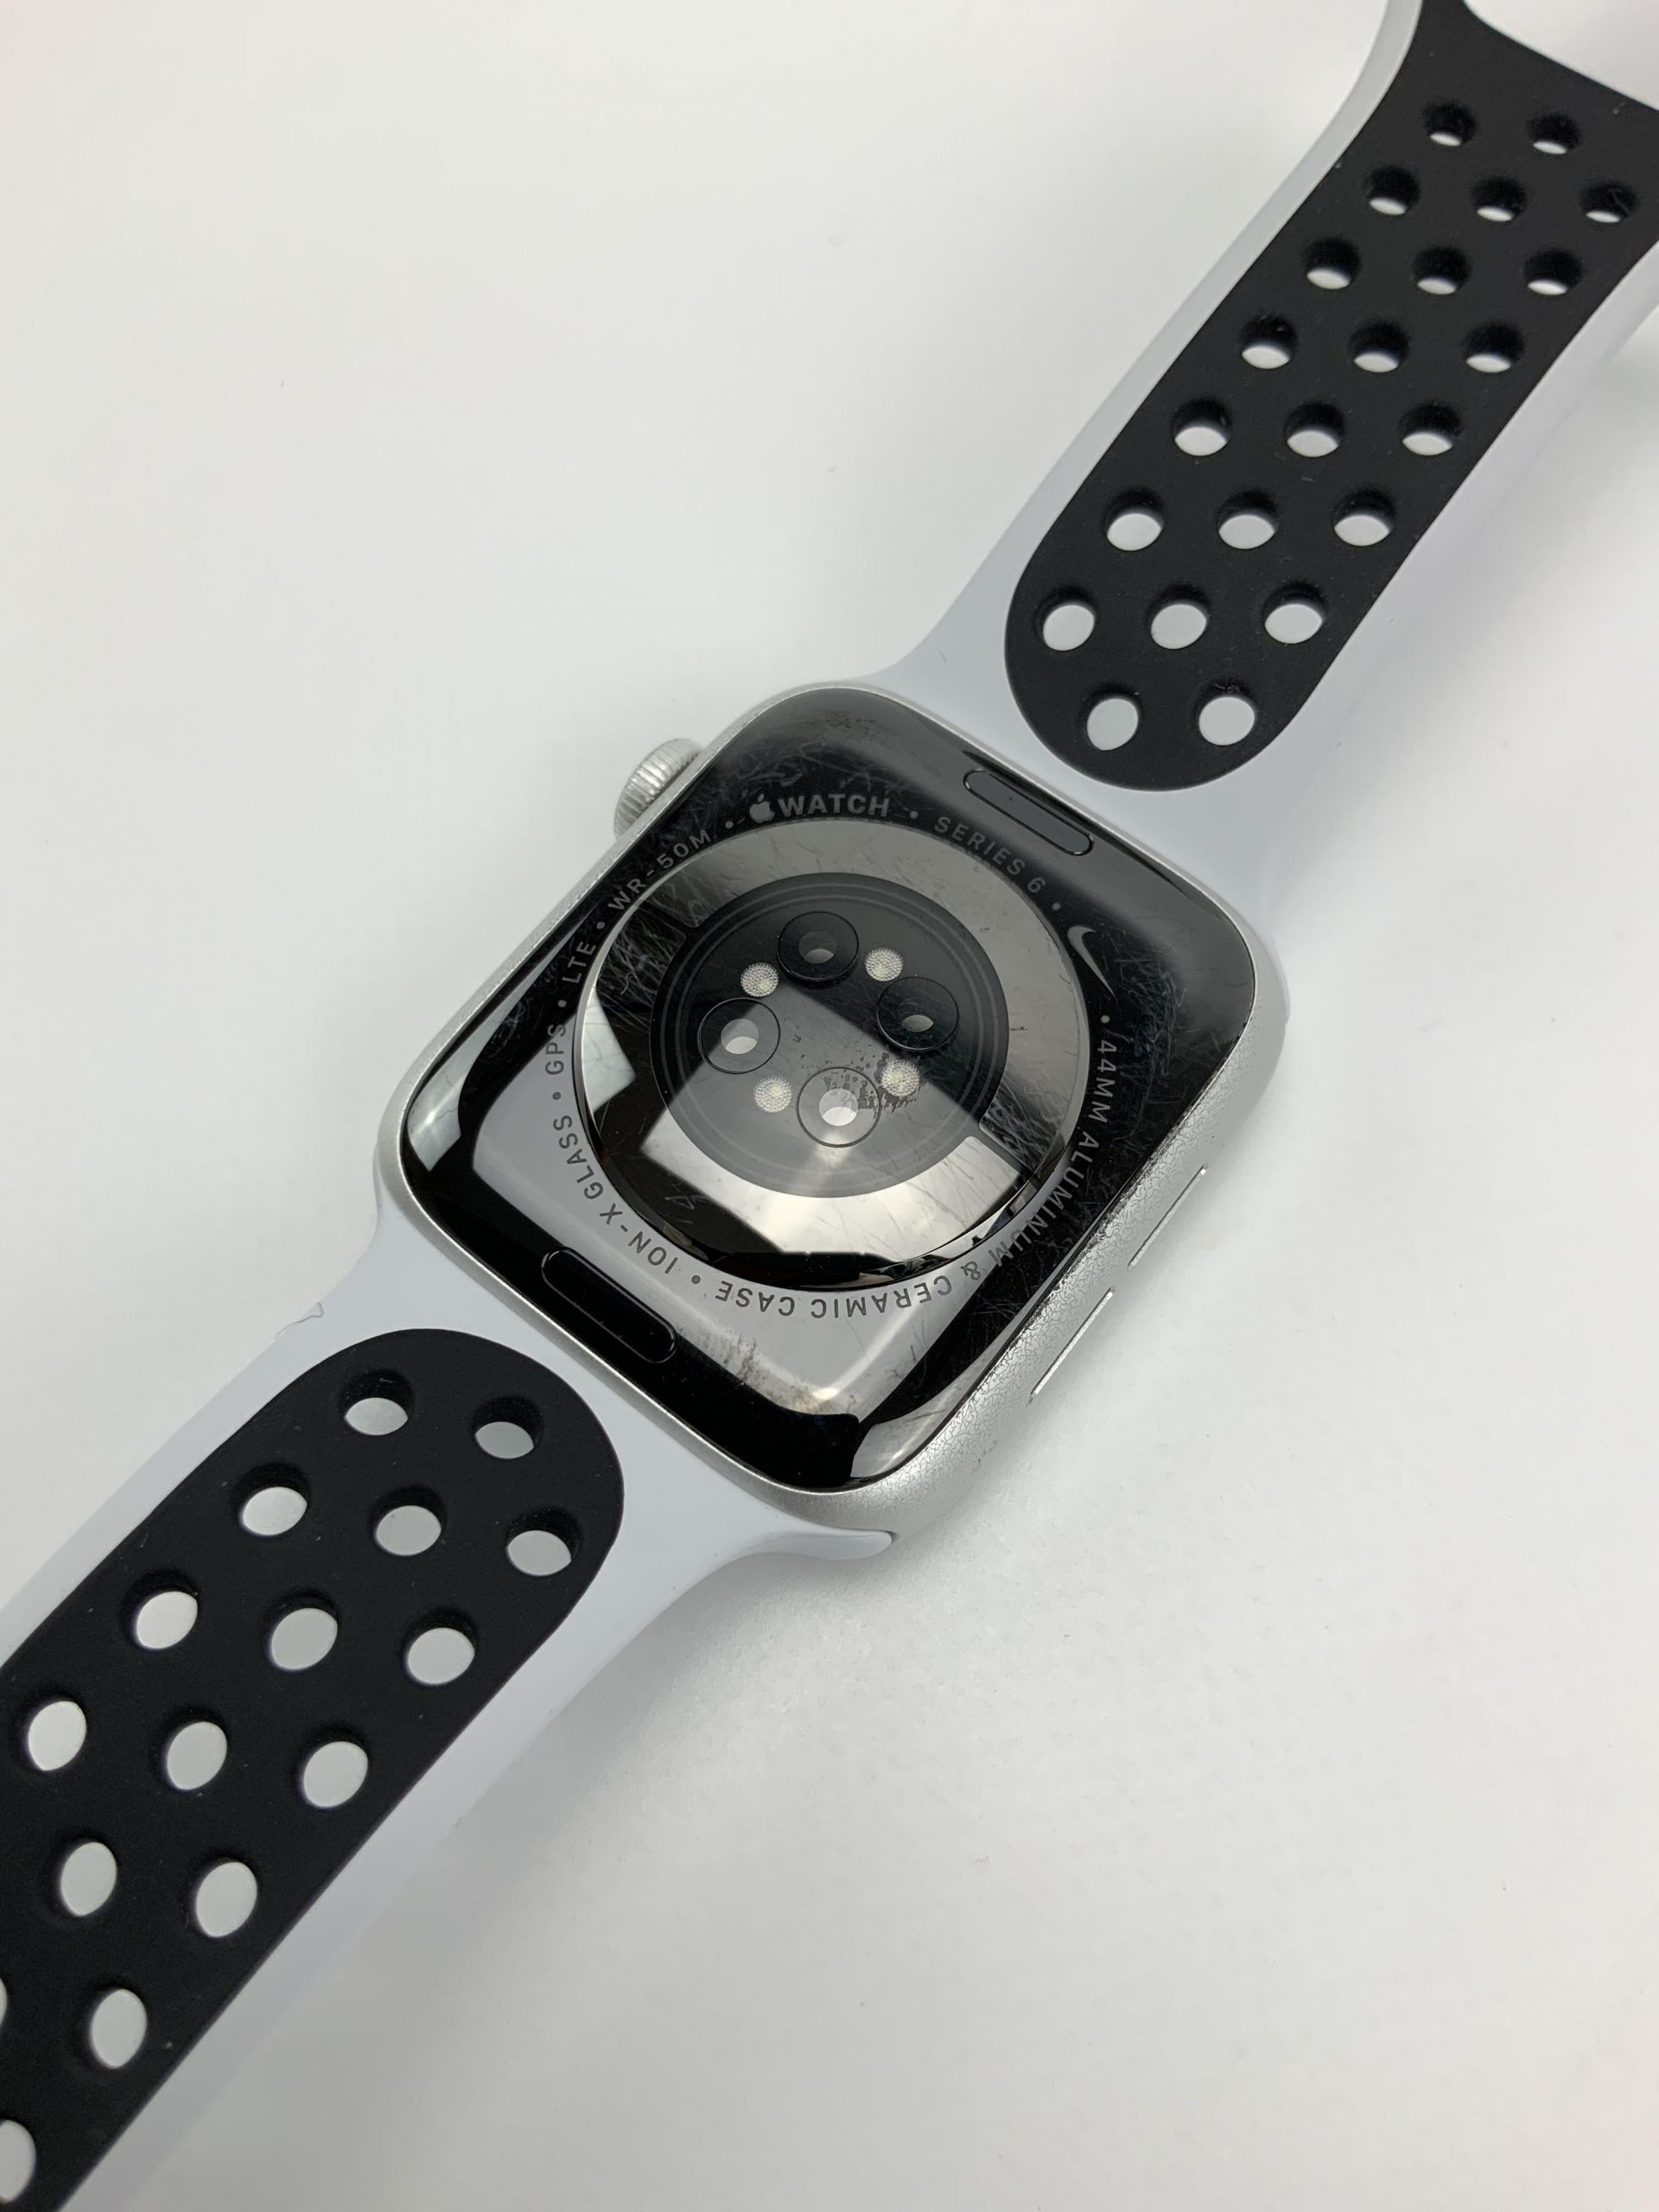 Watch Series 6 Aluminum Cellular (44mm), Silver, imagen 5